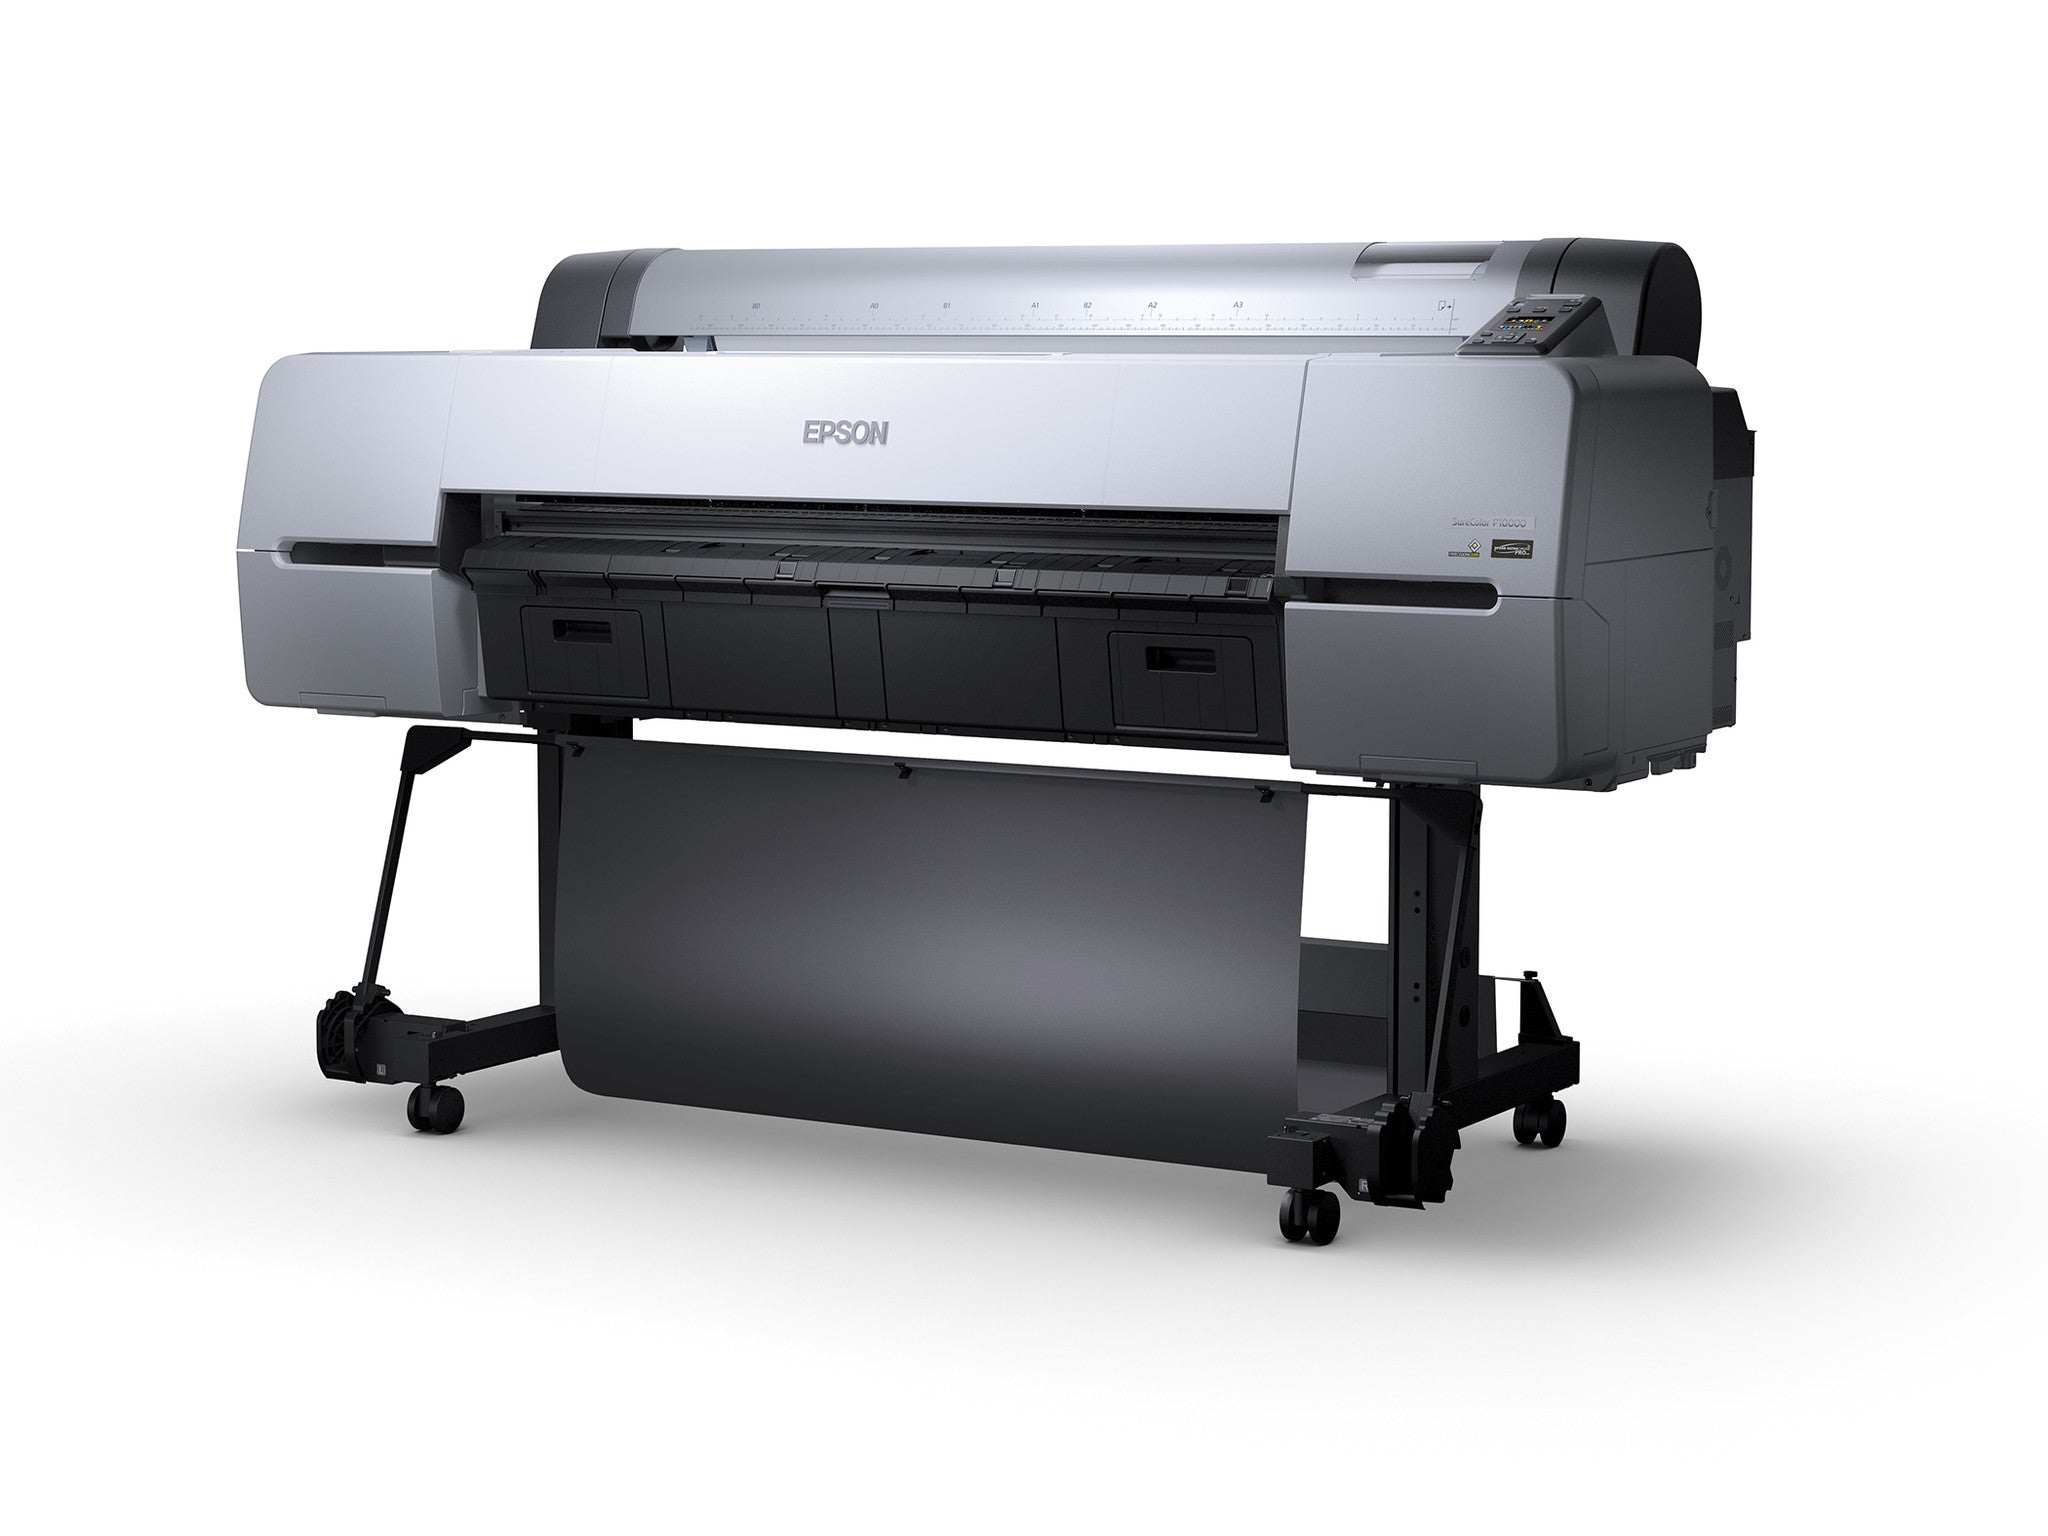 Epson SureColor P10000 44” Wide Format Printer, printers large format, Epson - Pictureline  - 3